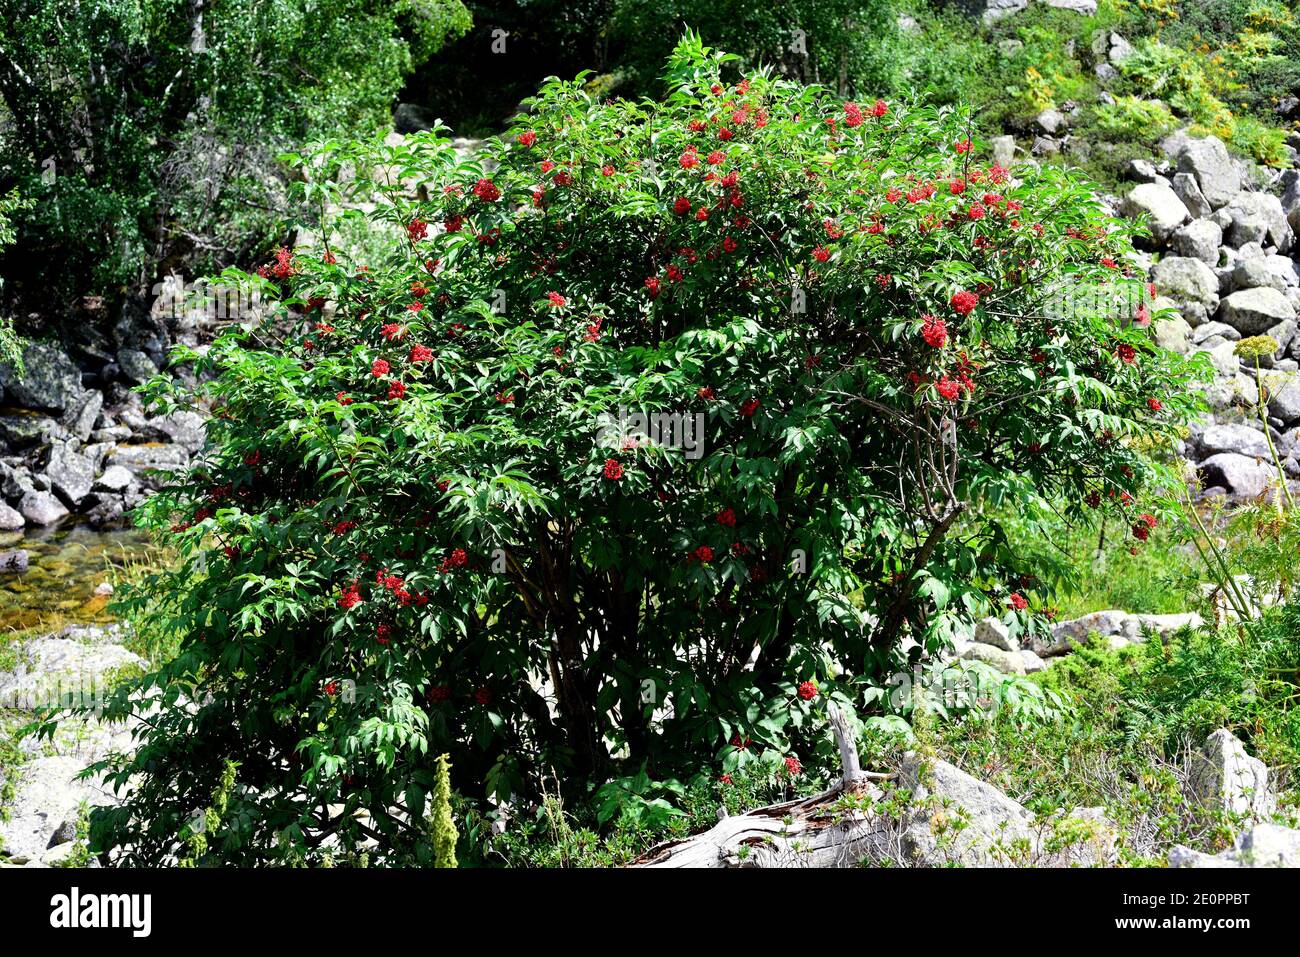 Rote Holunderbeere (Sambucus racemosa) ist ein großer Strauch oder kleiner Baum, der in Europa, Nordamerika und Nordasien beheimatet ist. Dieses Foto wurde aufgenommen in Stockfoto